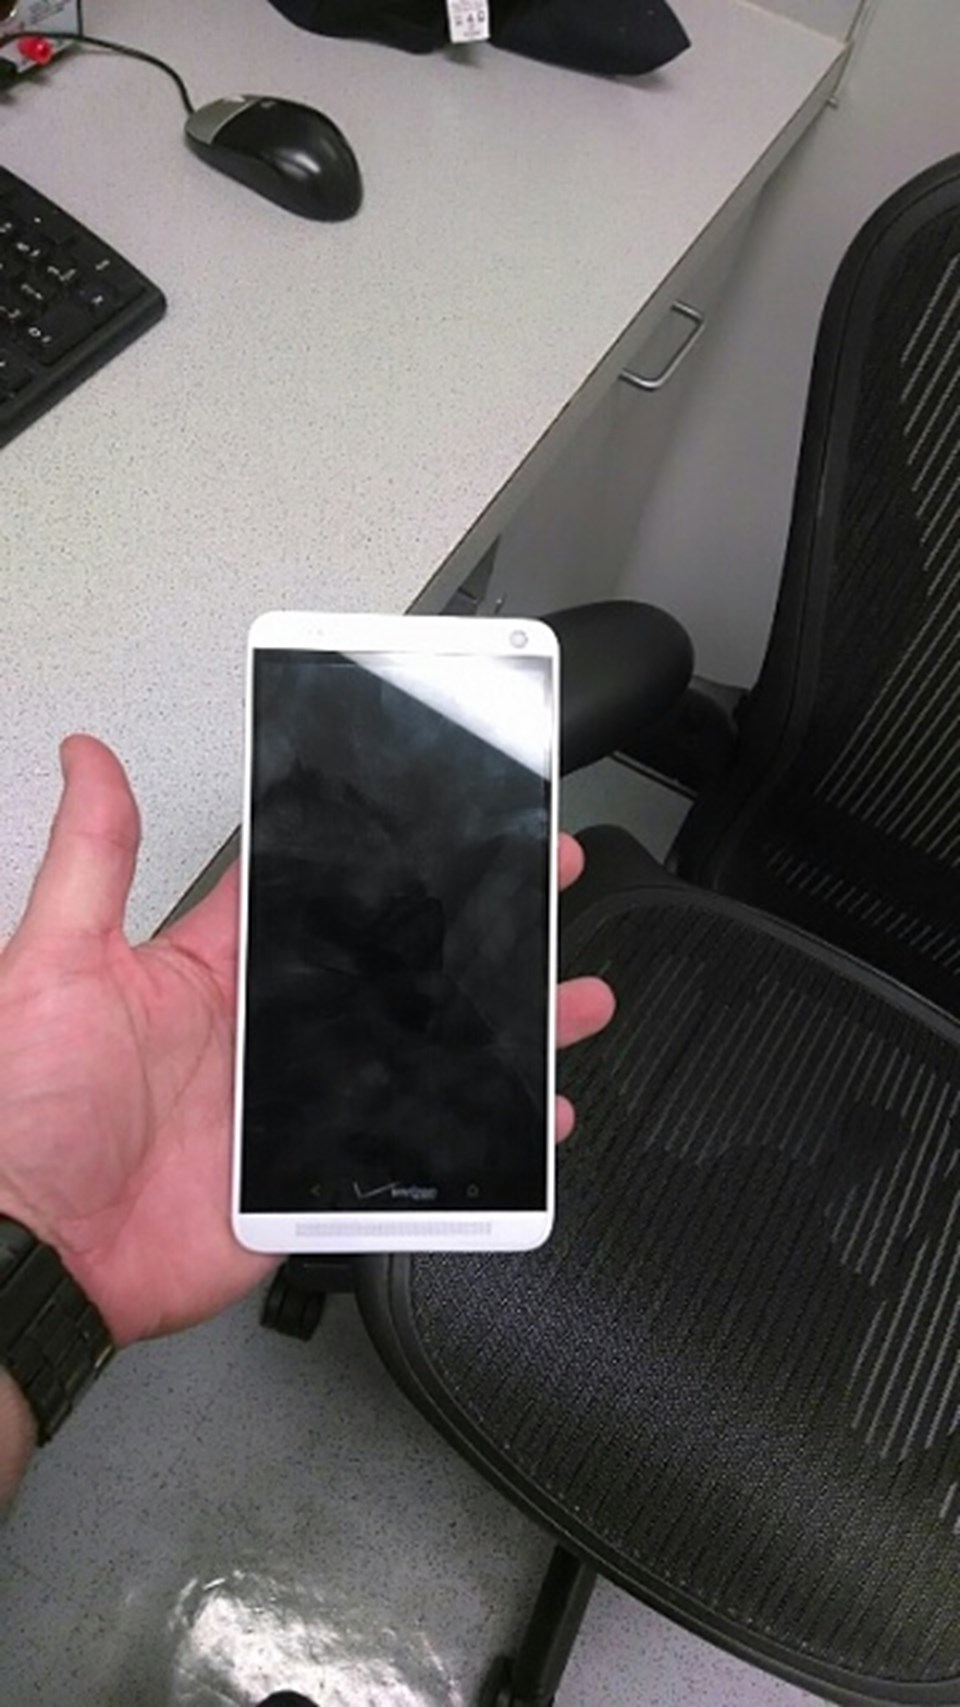 HTC One Max parmak izi sensörüyle geliyor - 2